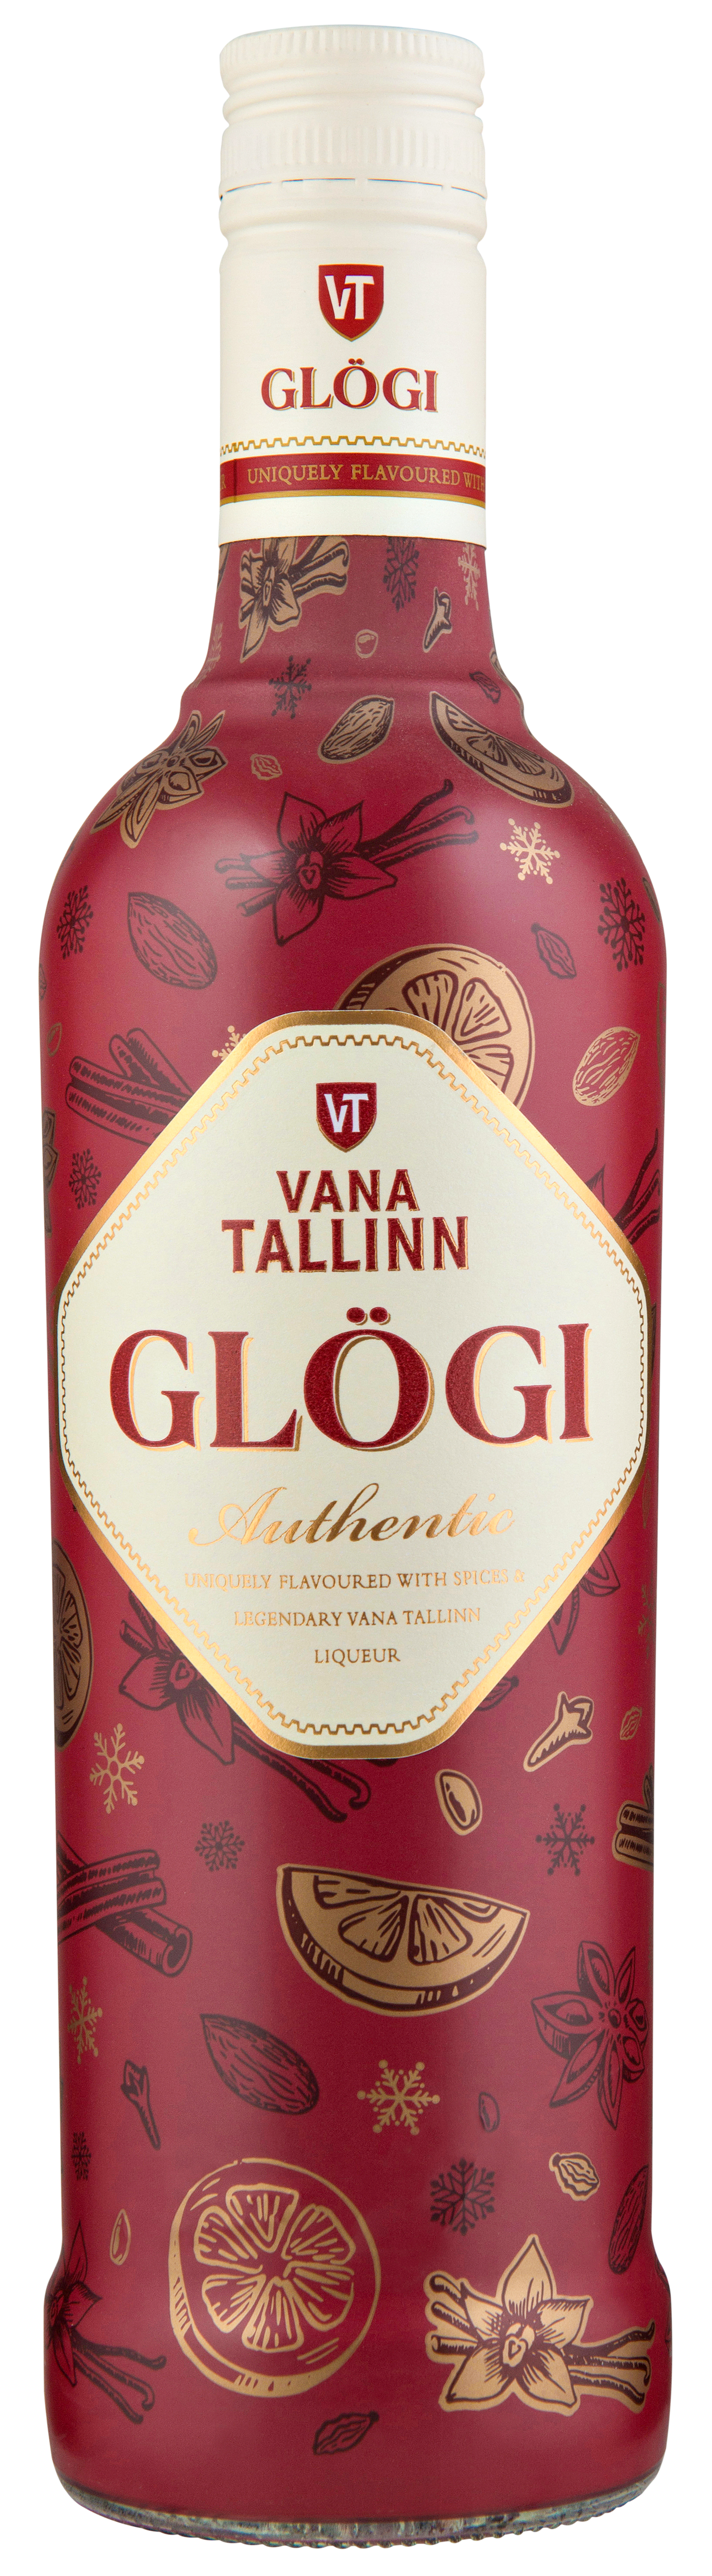 Vana Tallinn Glogg